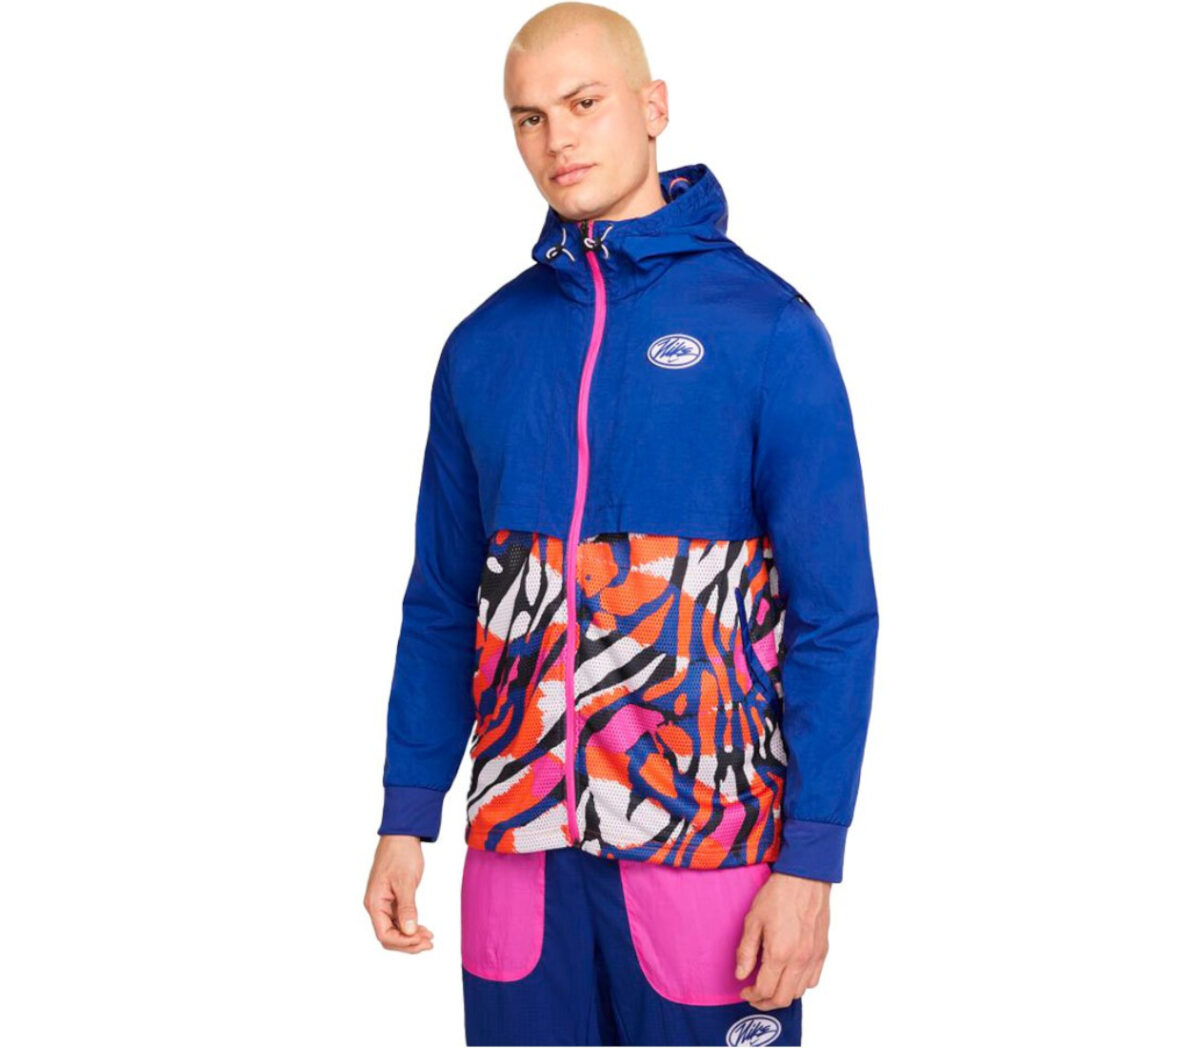 Giacca Nike Dri-fit sport clash uomo blu rosa